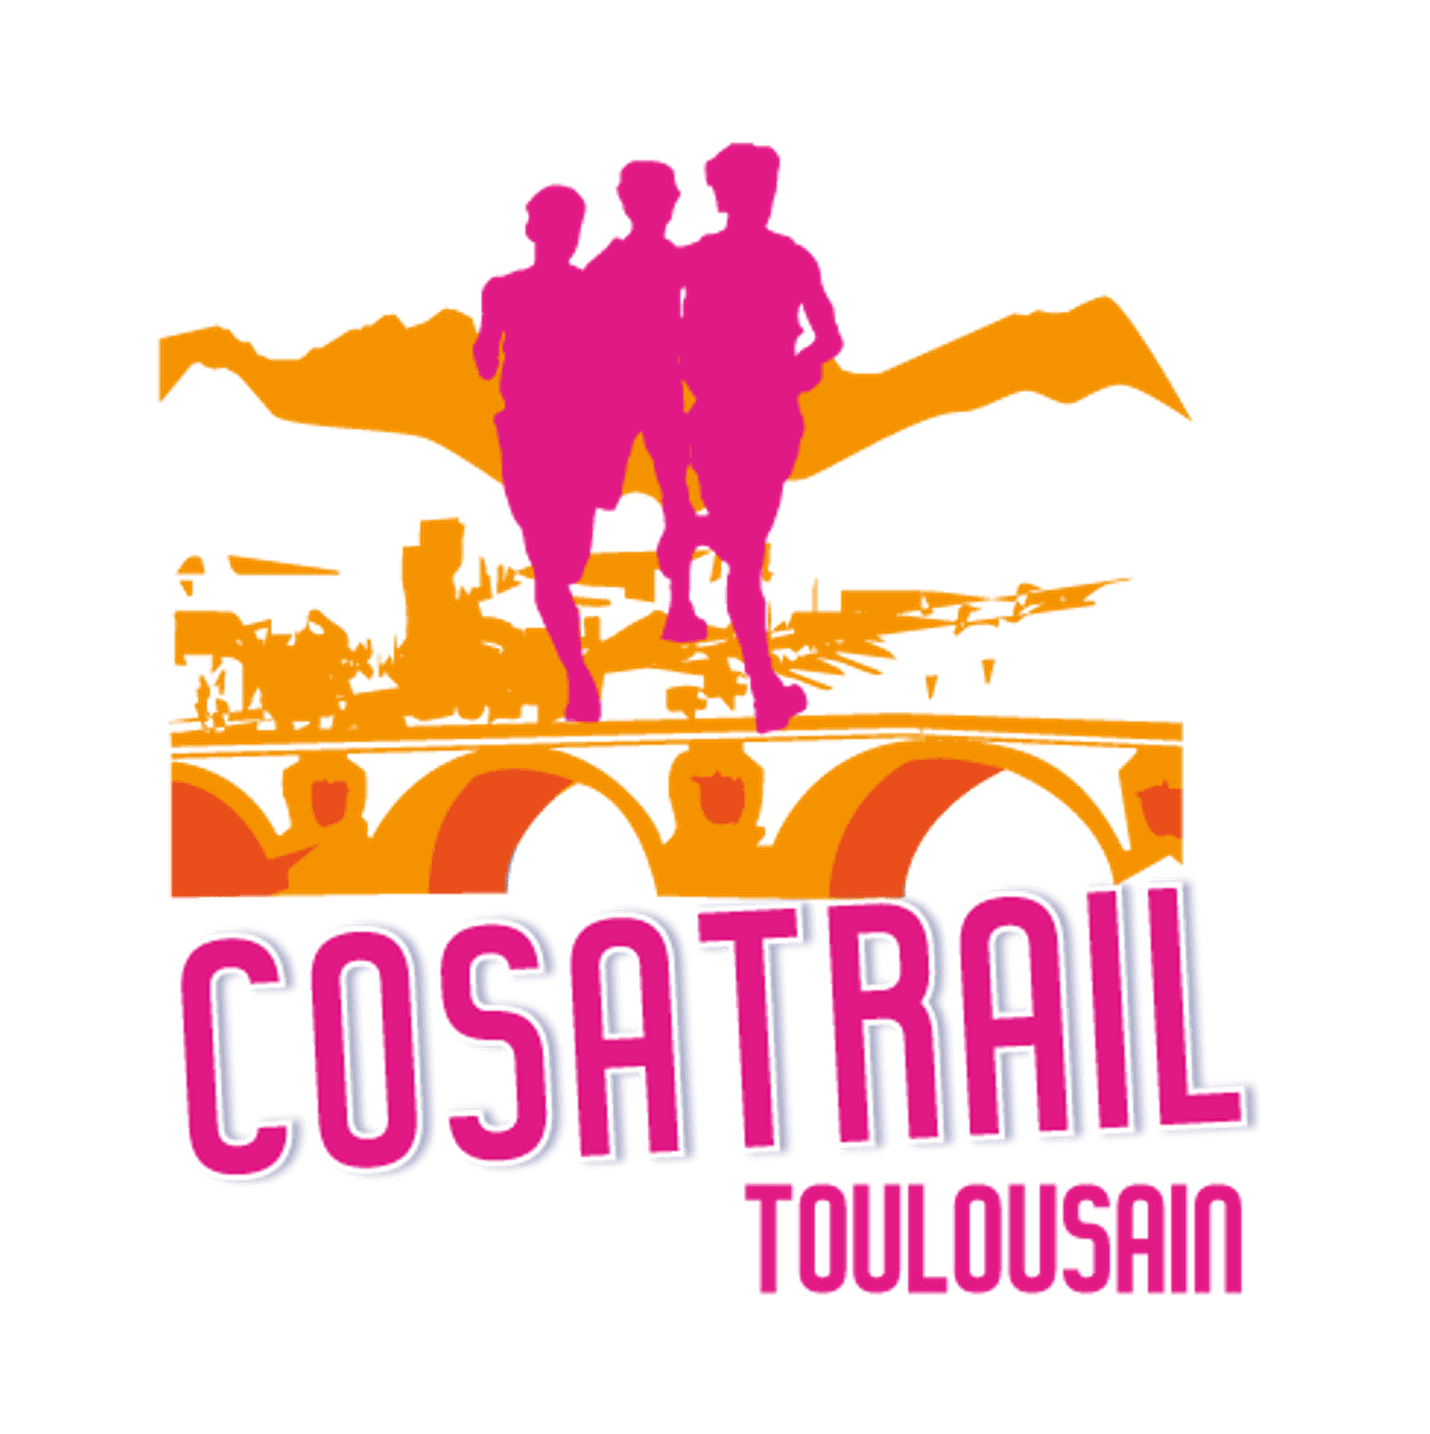 Logo Cosatrail Toulousain